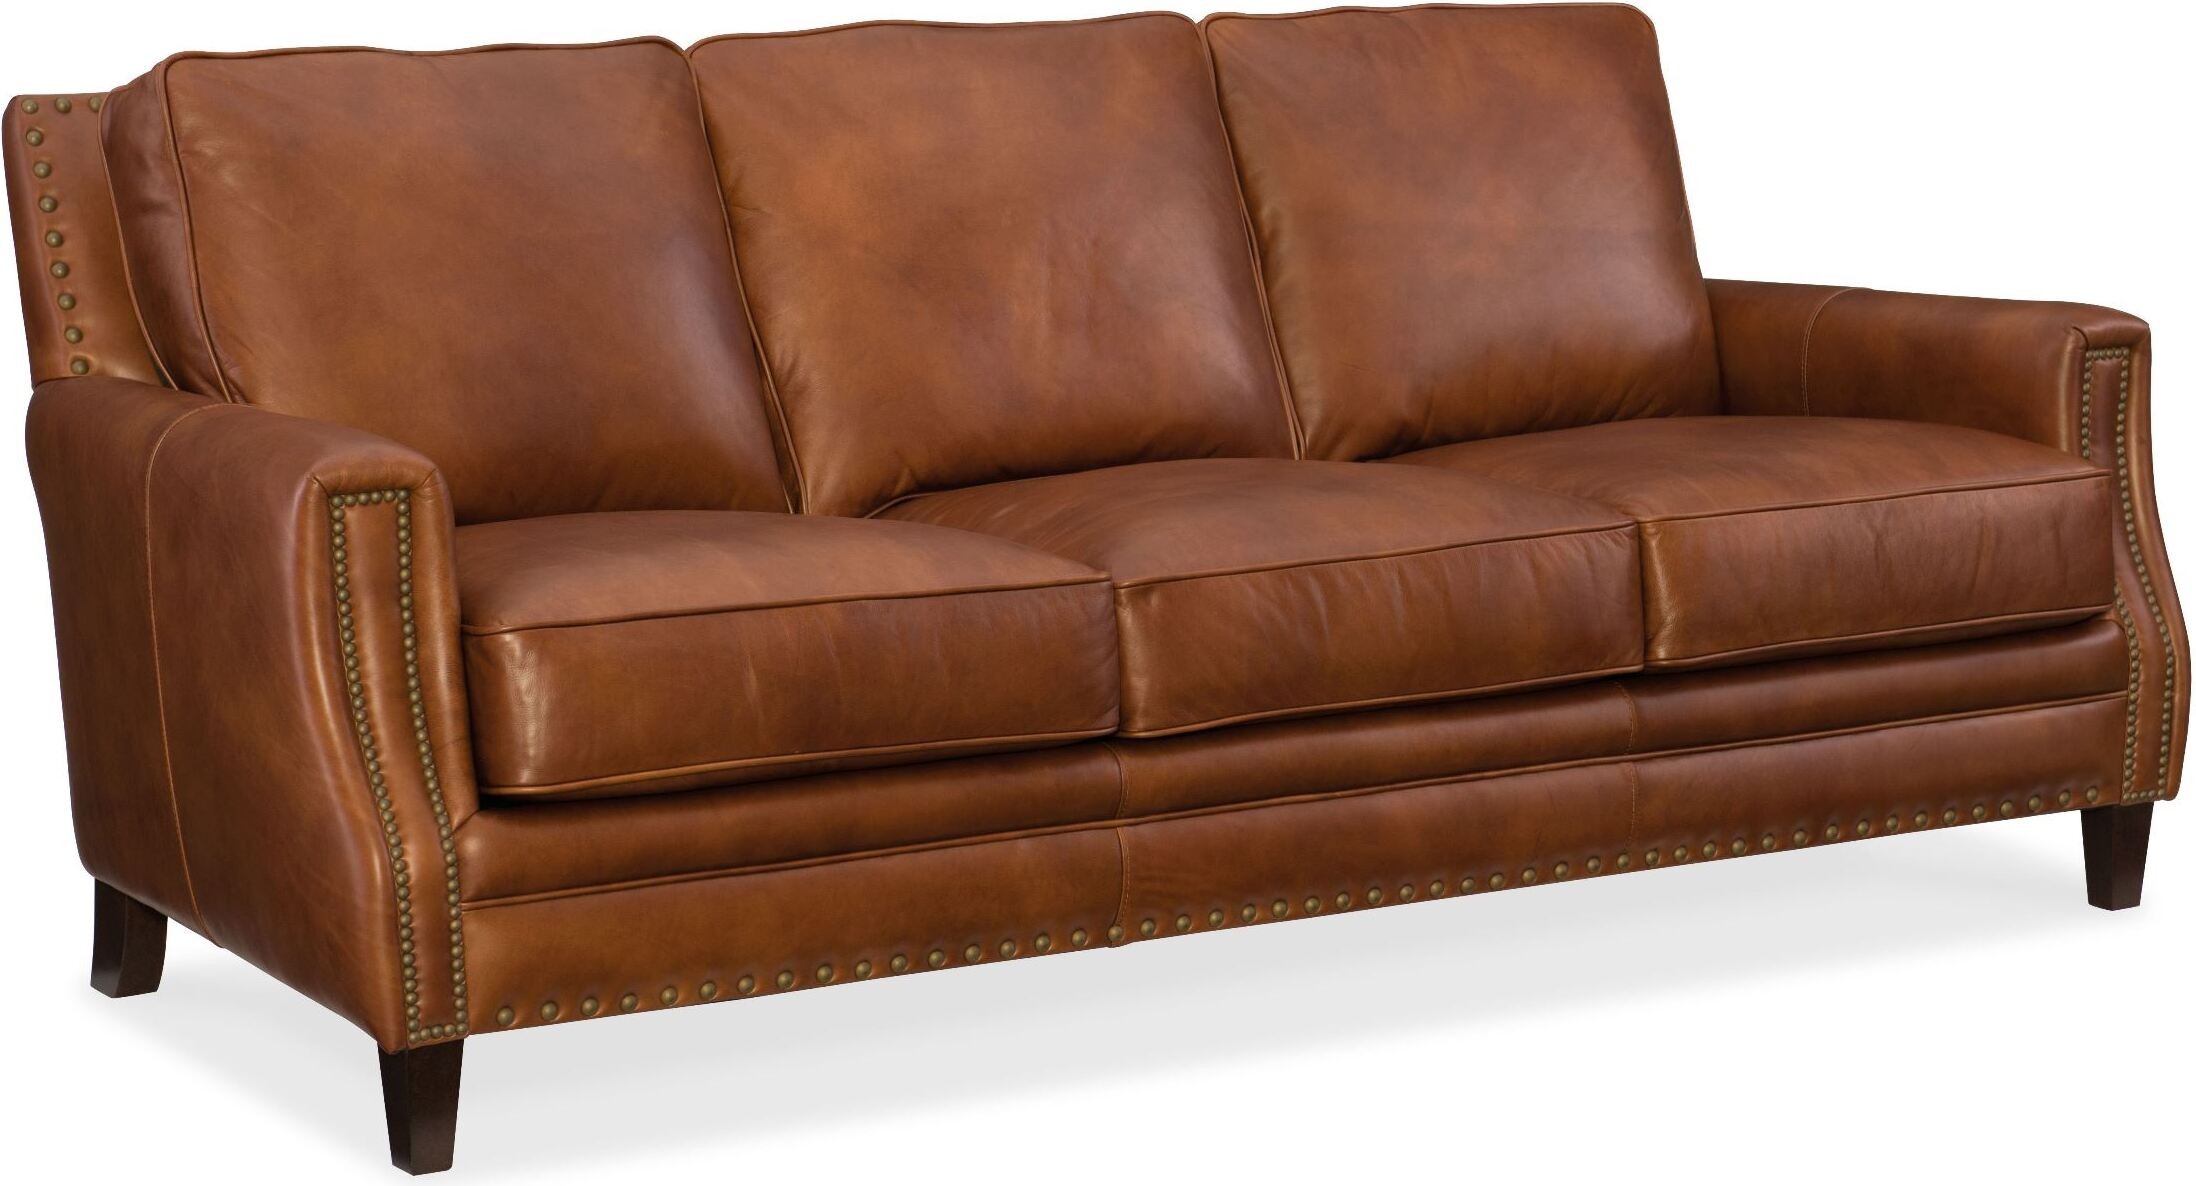 saddle leather sofa bed